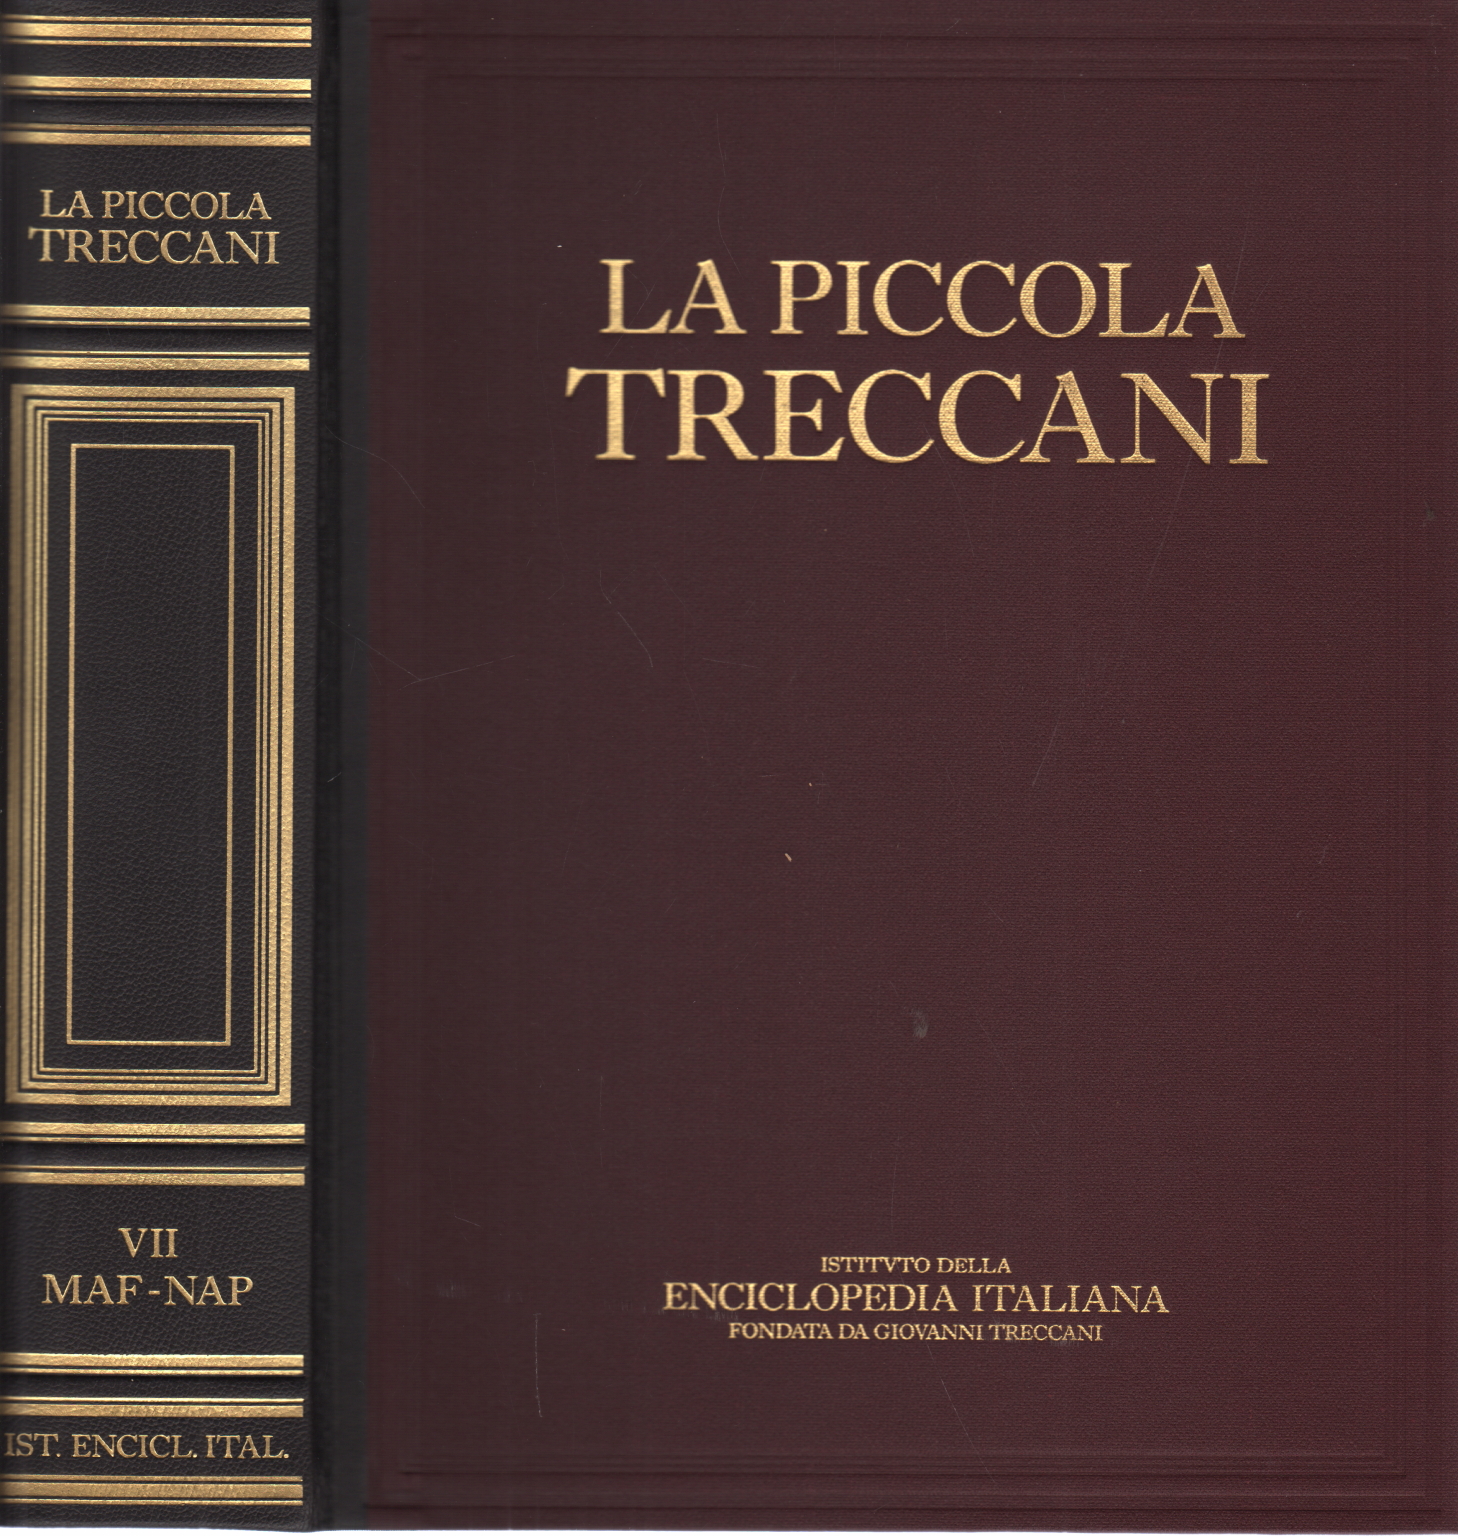 La Piccola Treccani VII Maf-Nap, AA.VV.